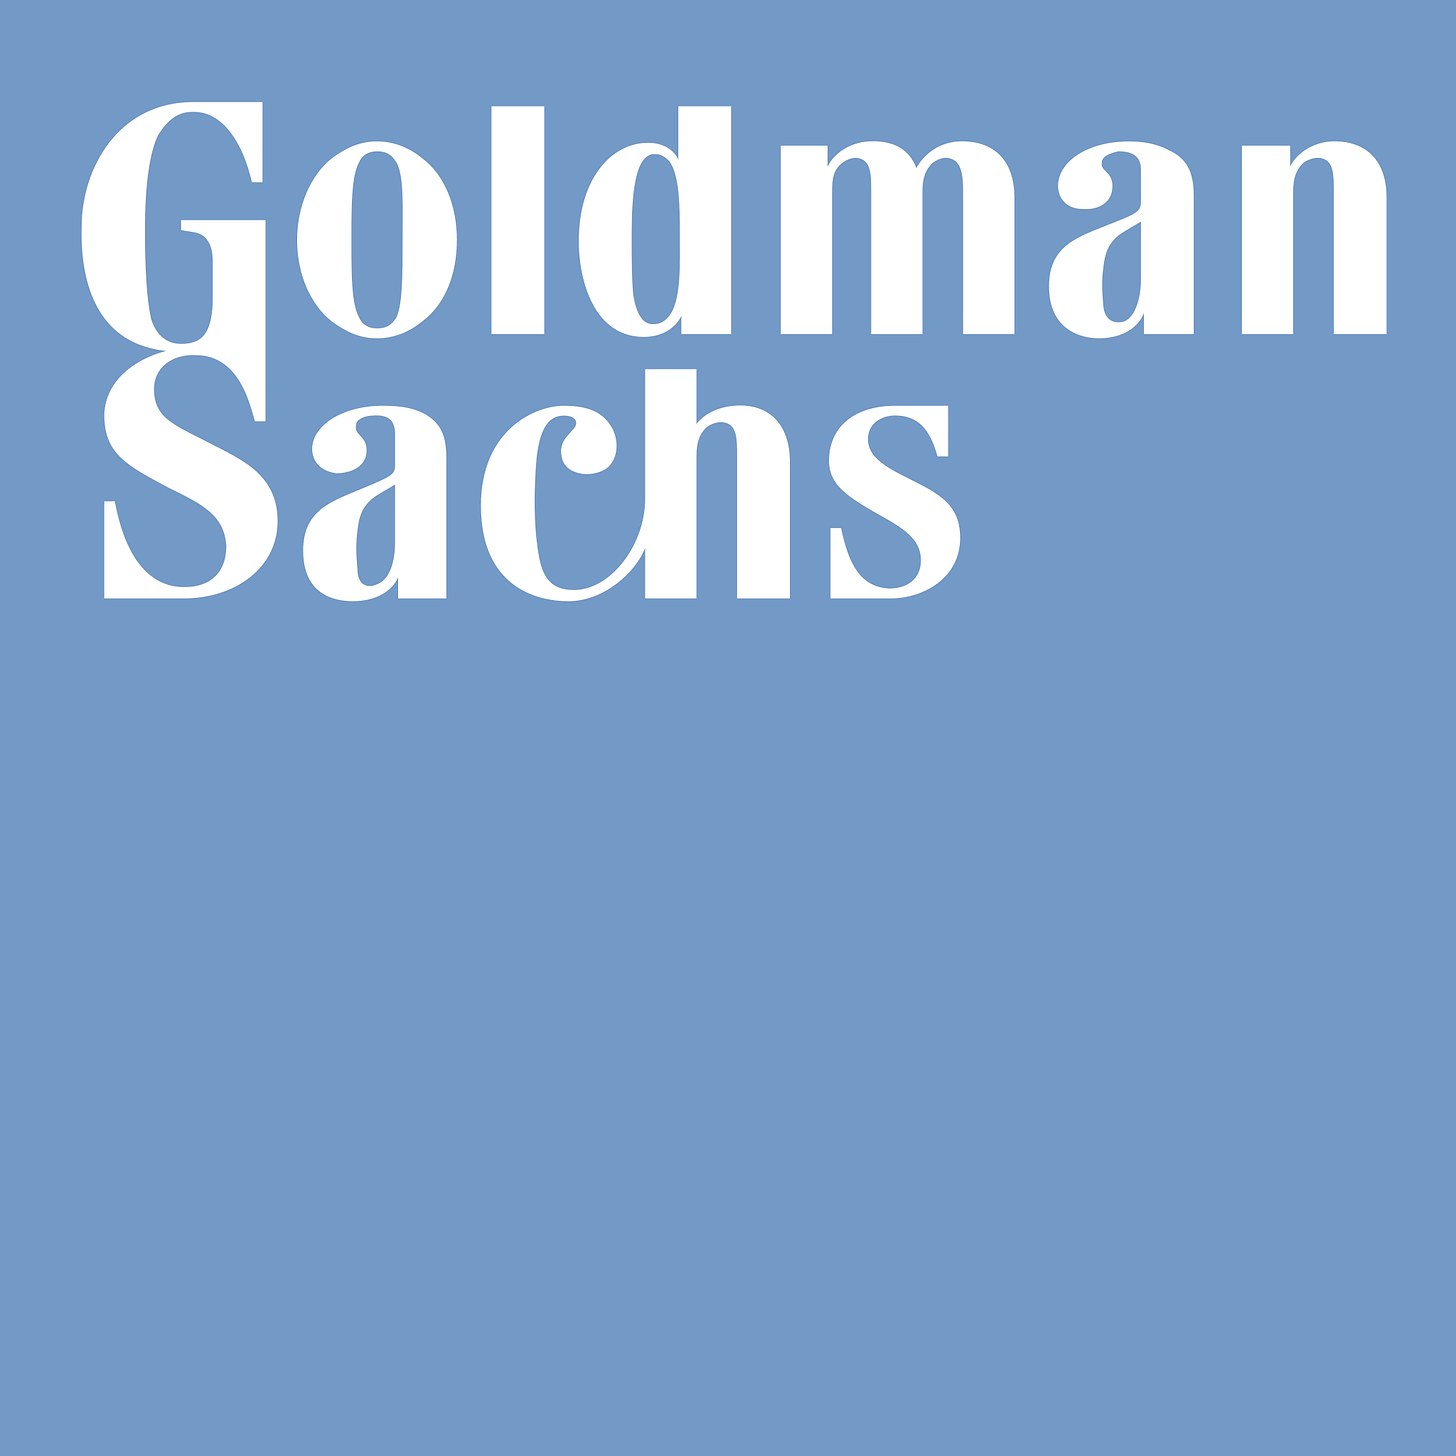 File:Goldman Sachs.svg - Wikipedia